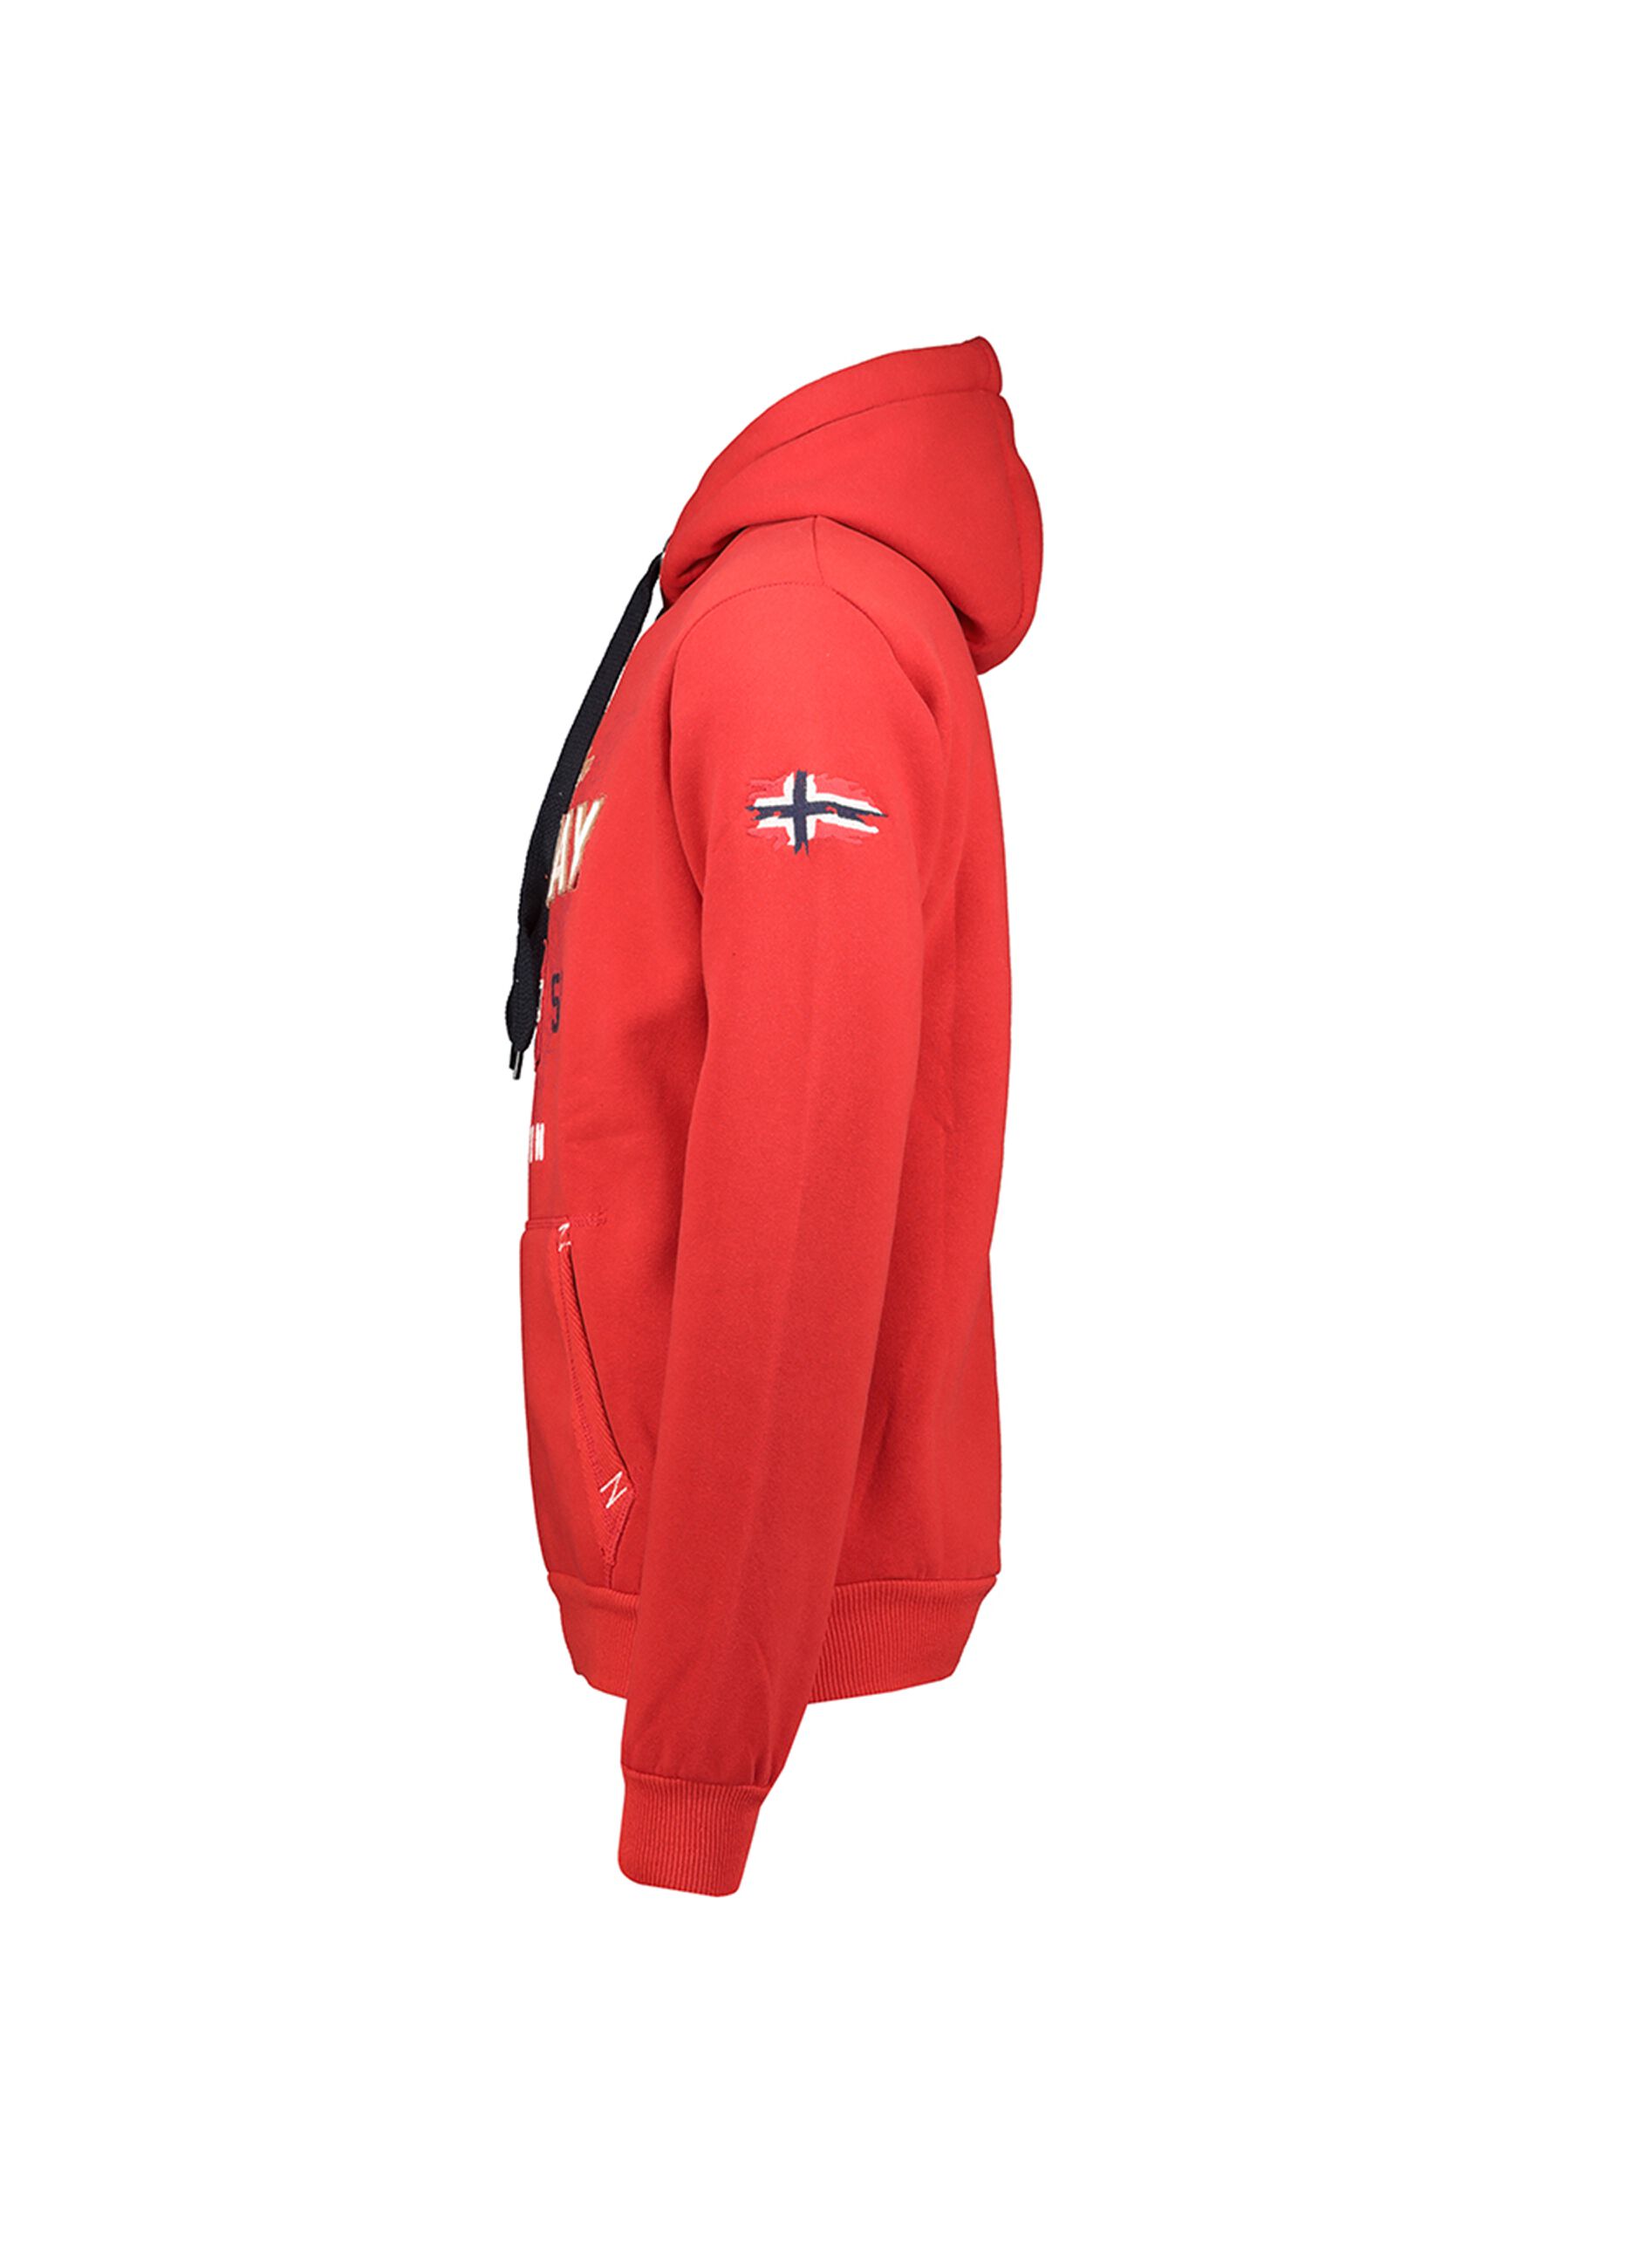 Geographical Norway sweatshirt with hood